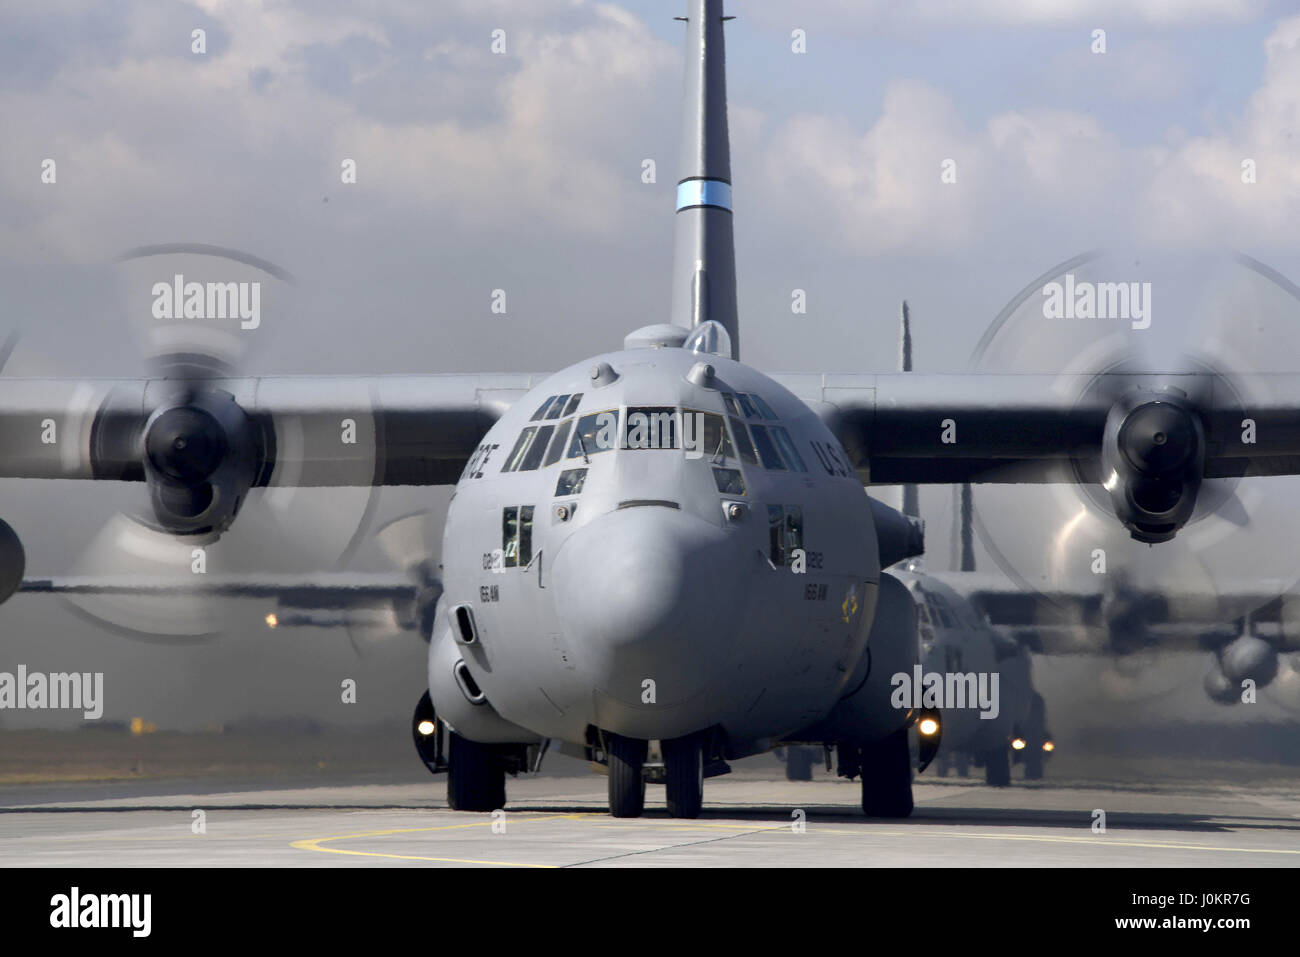 C-130 Hercules aircraft, Lockheed C-130 Hercules military transport aircraft Stock Photo